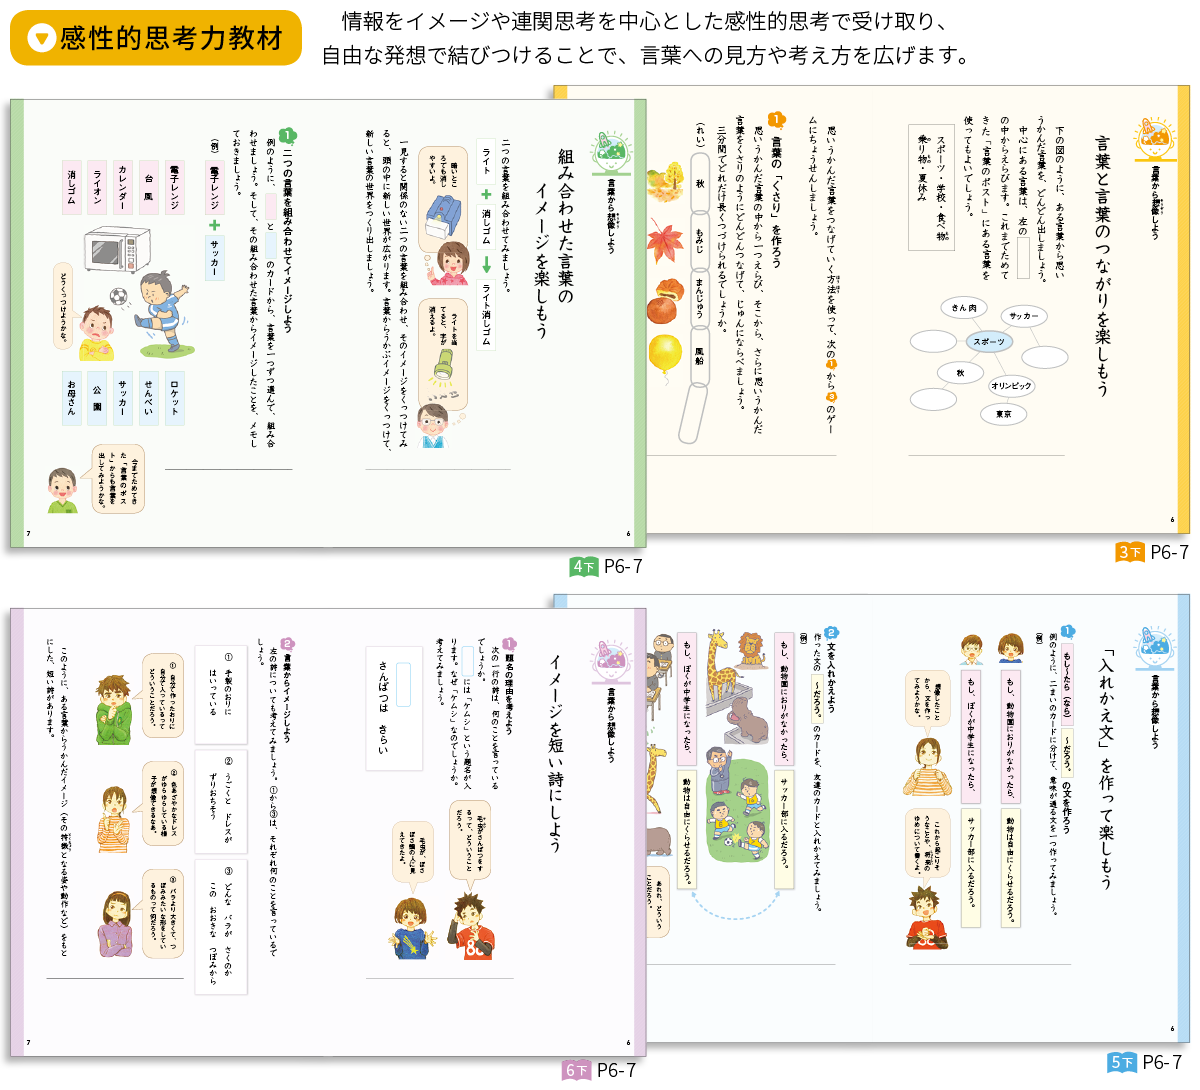 学校図書 Webパンフレット みんなと学ぶ小学校国語